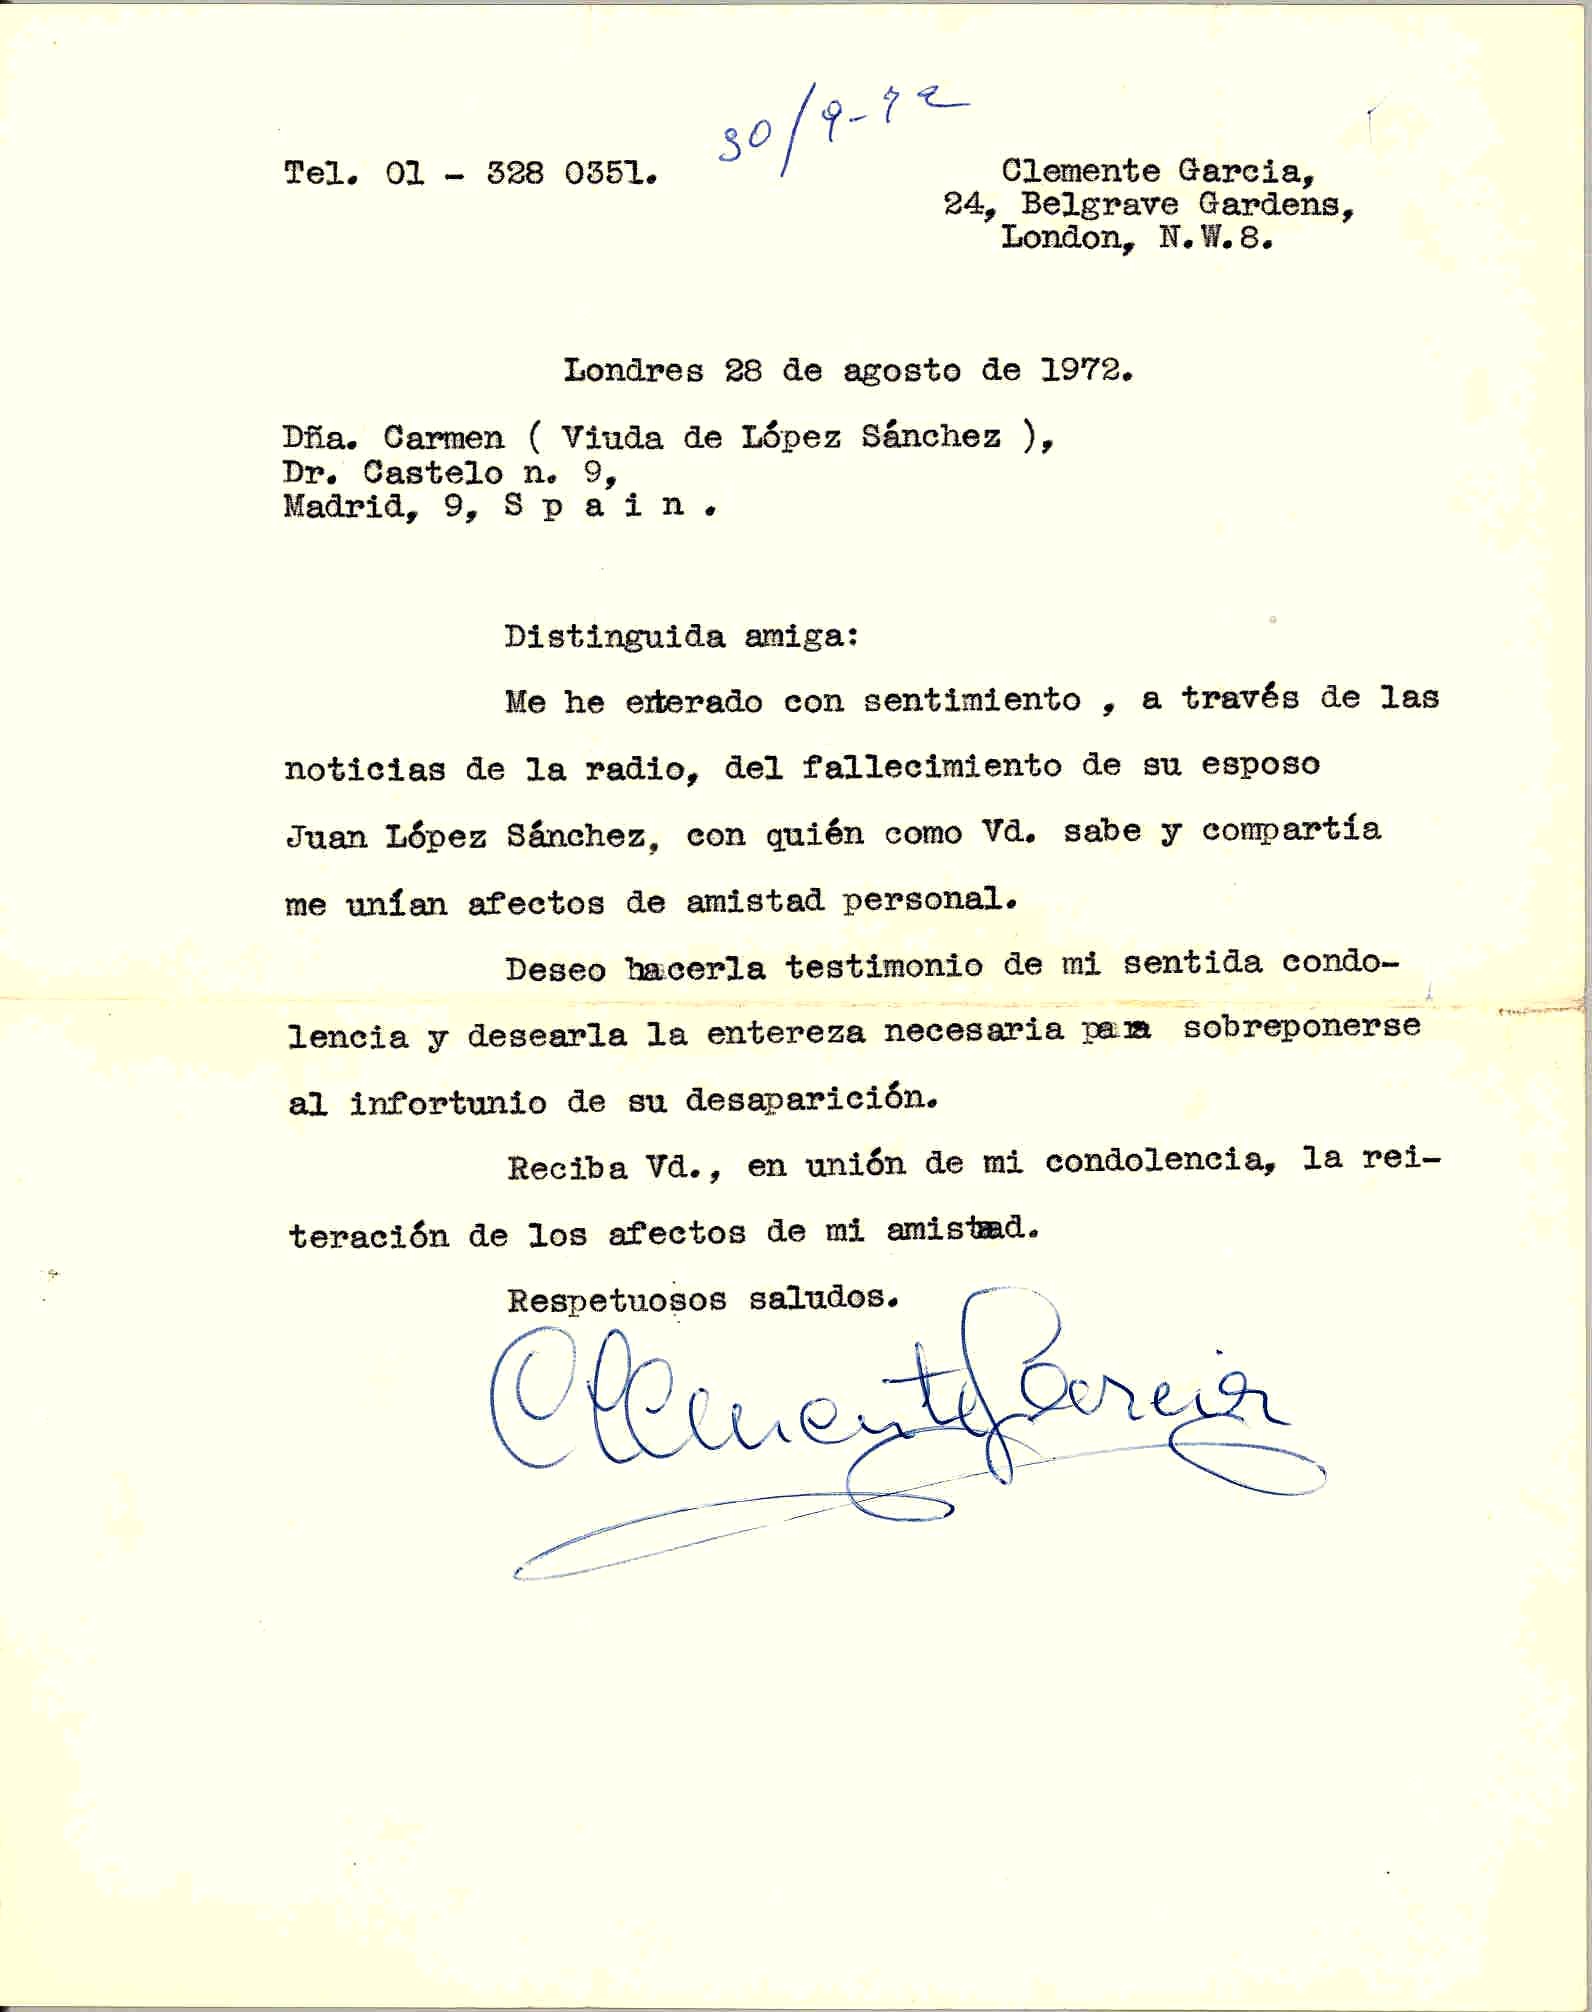 Carta de Clemente García expresando su pésame por la muerte de Juan López